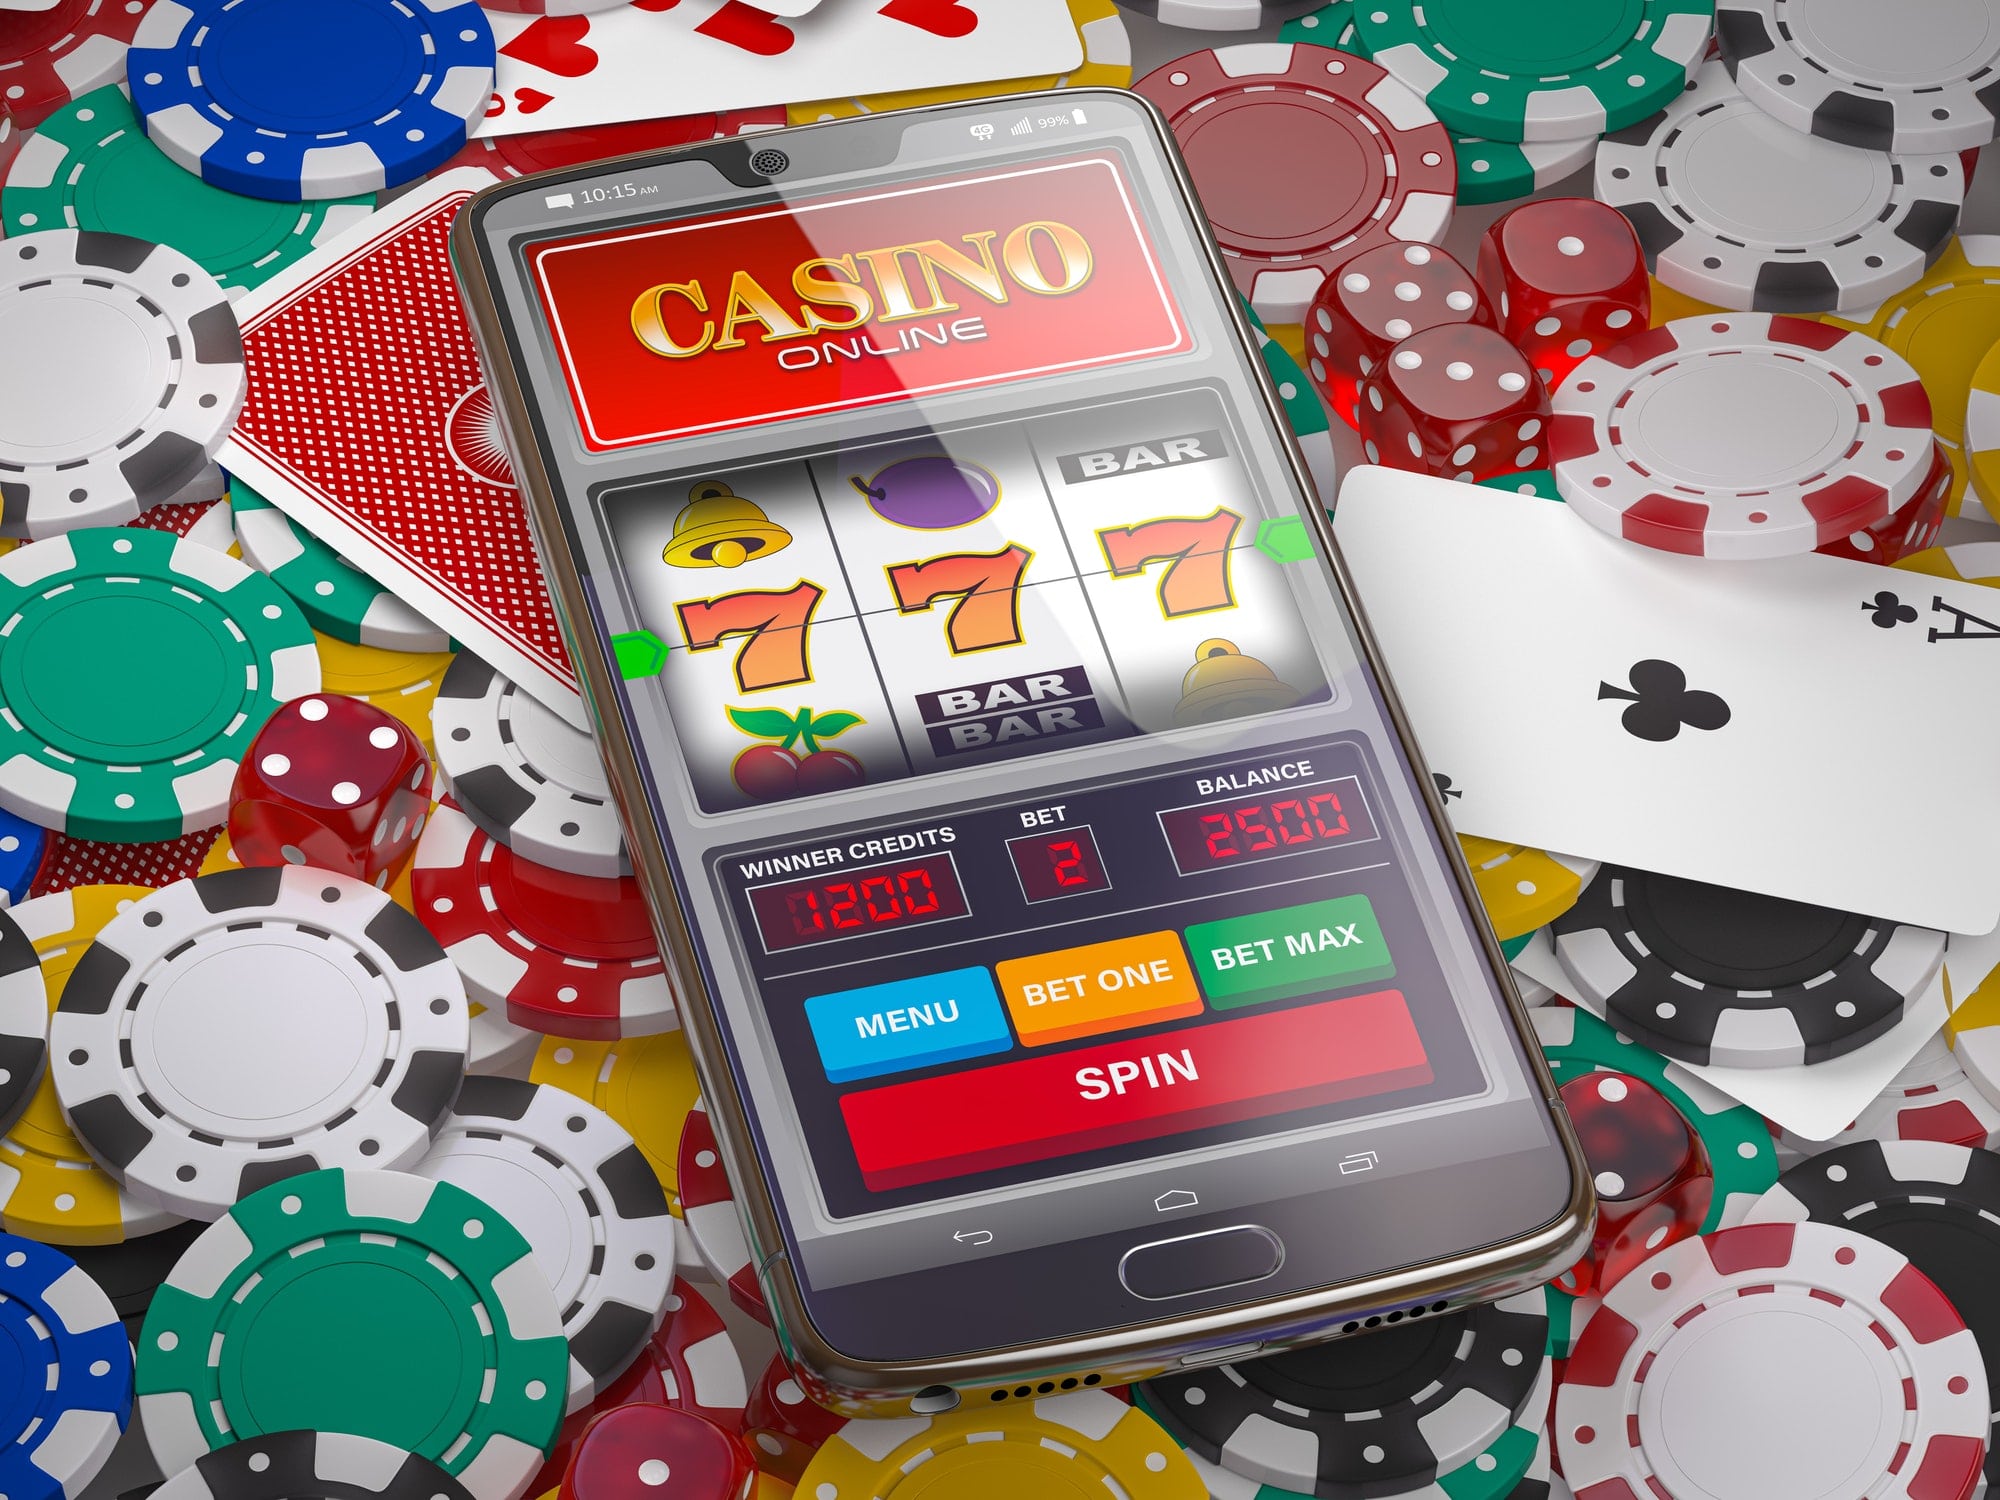 Топ онлайн казино на реальные деньги отзывы азартные игровые автоматы бесплатно и без регистрации демо игры вулкан играть